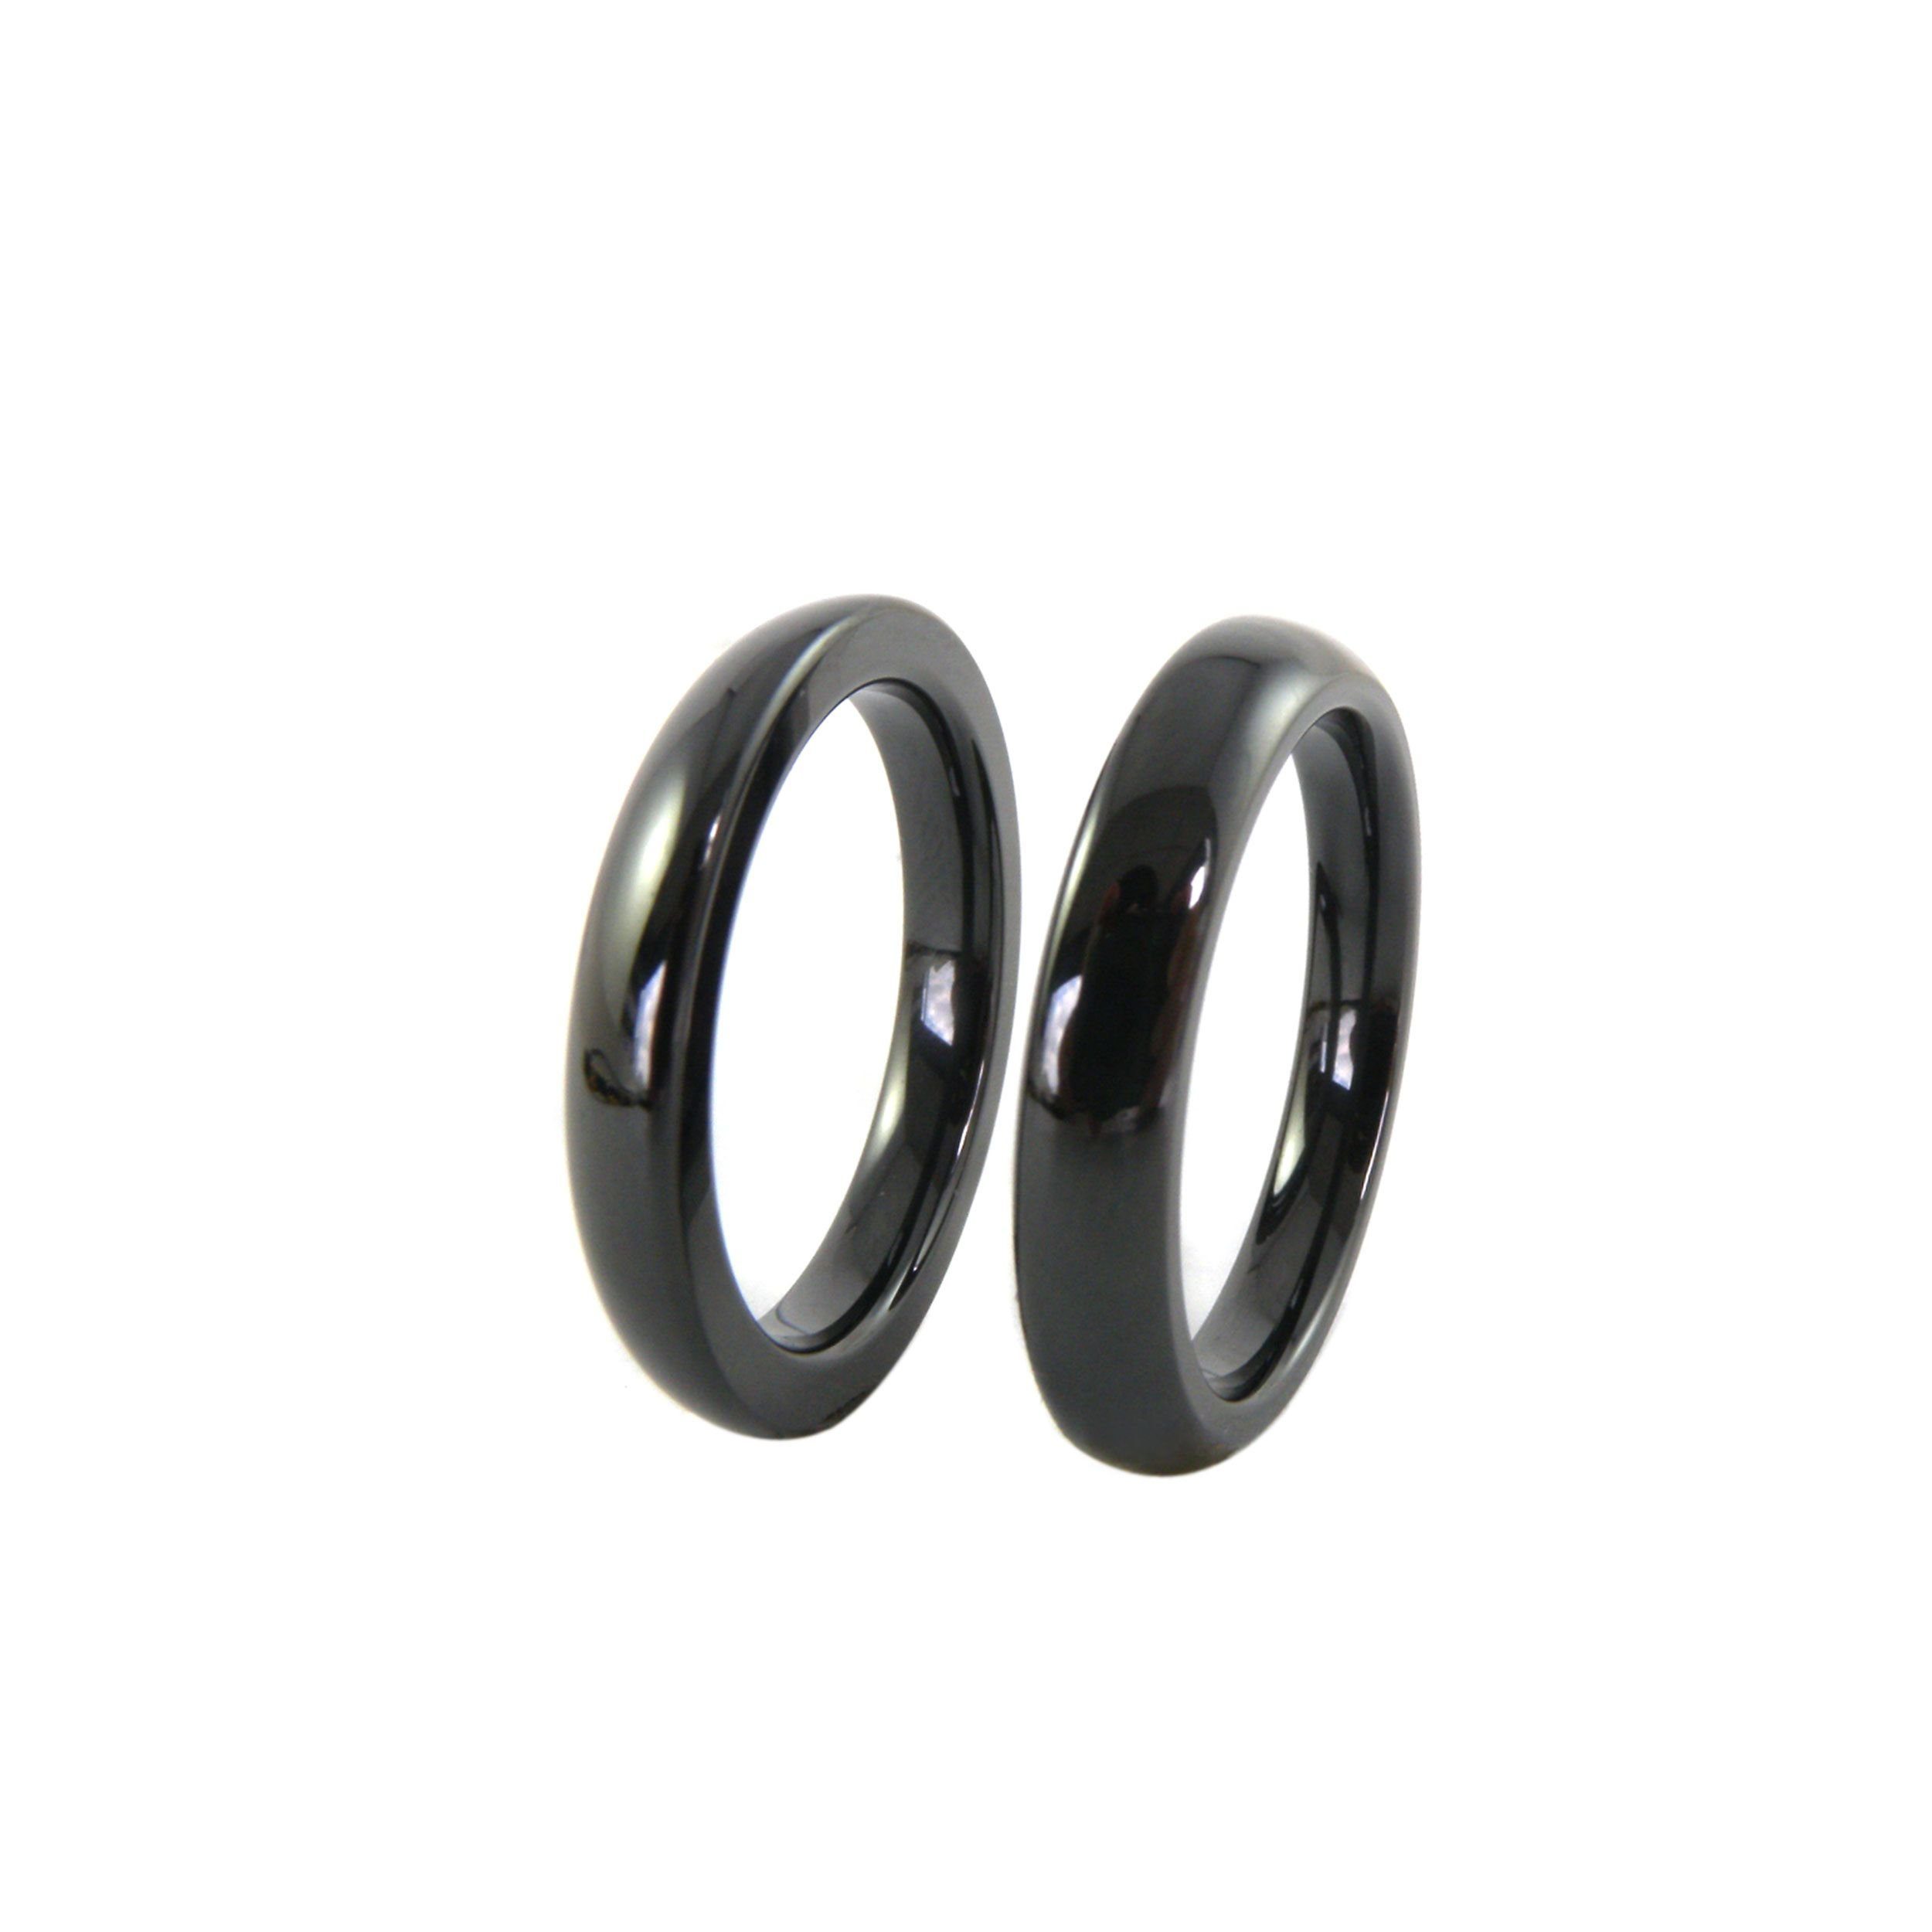 Ring "Black" Ring-Set Kingka Keramik Set Außen schwarz